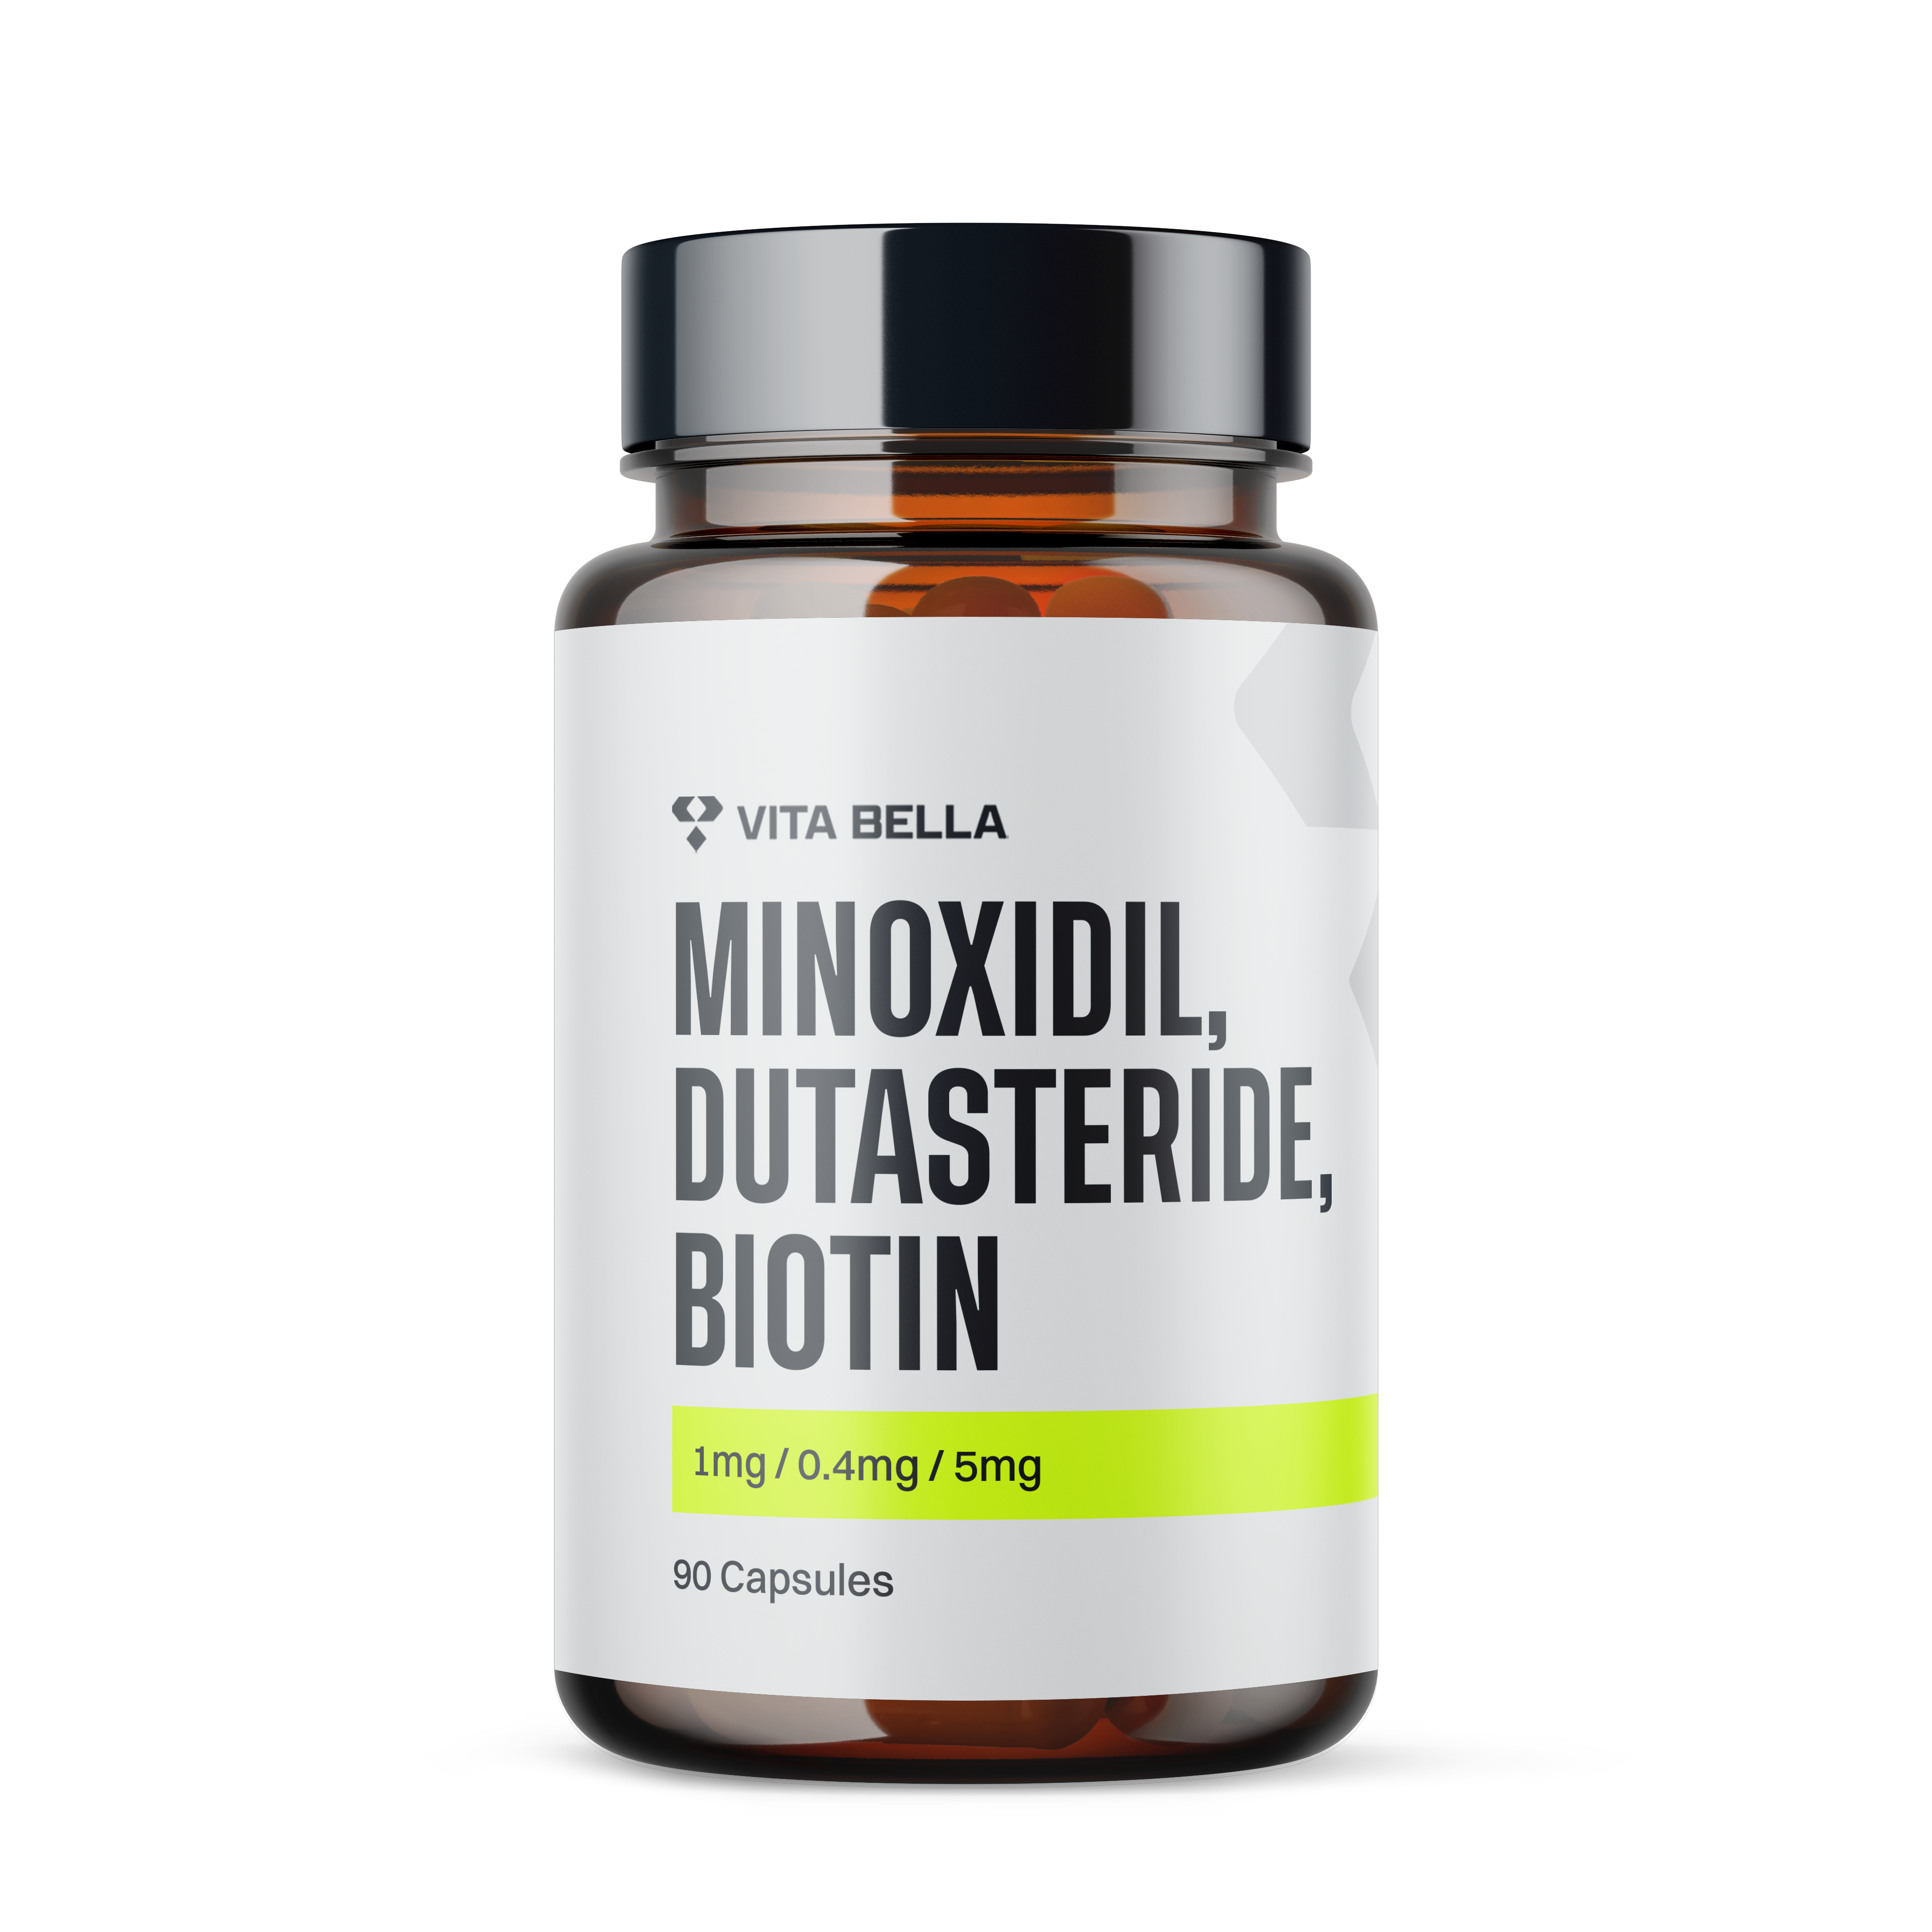 Minoxidil, dutasteride, biotin capsules